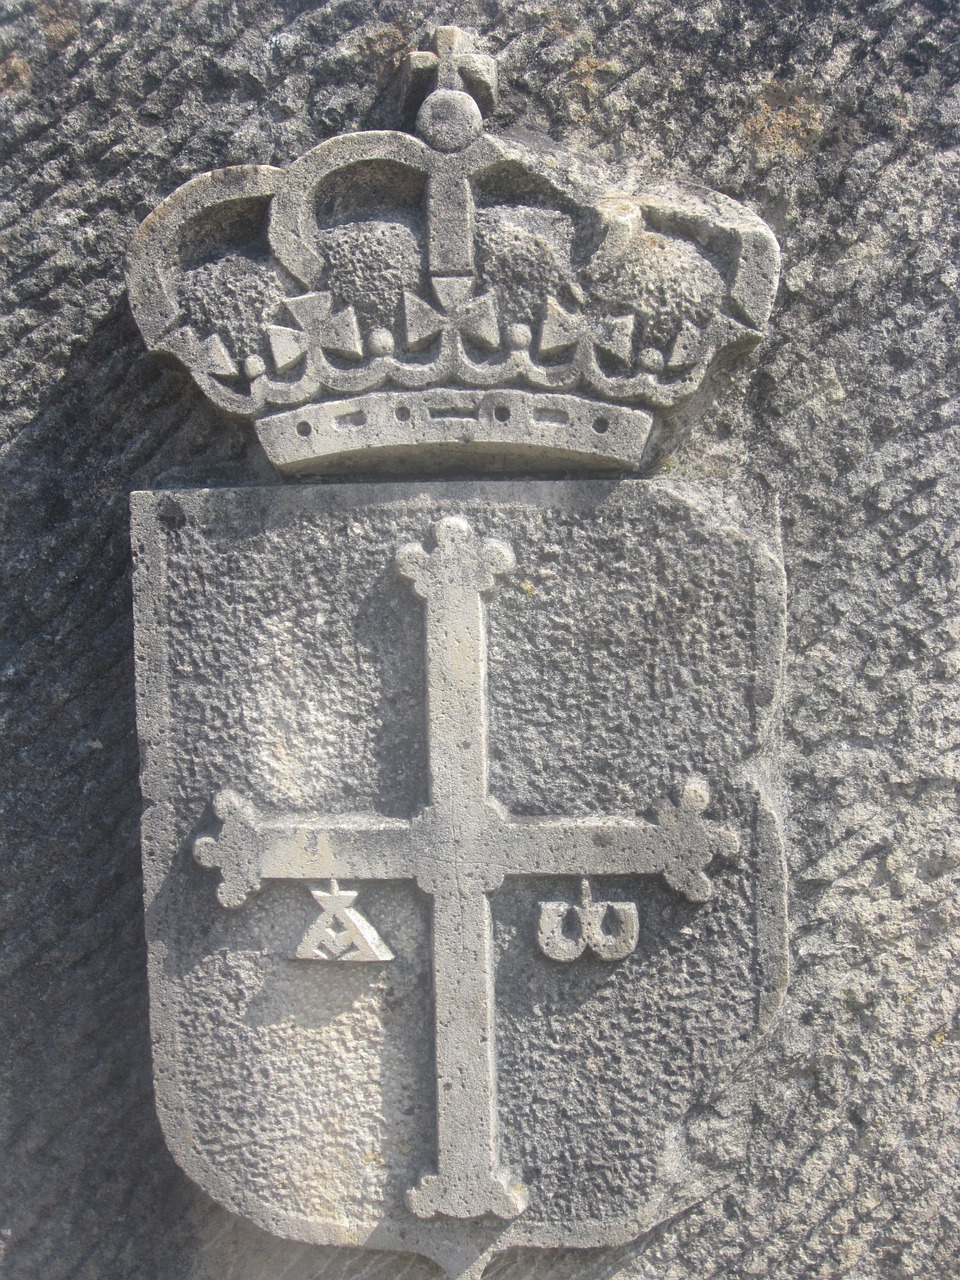 asturias stone coat of arms free photo